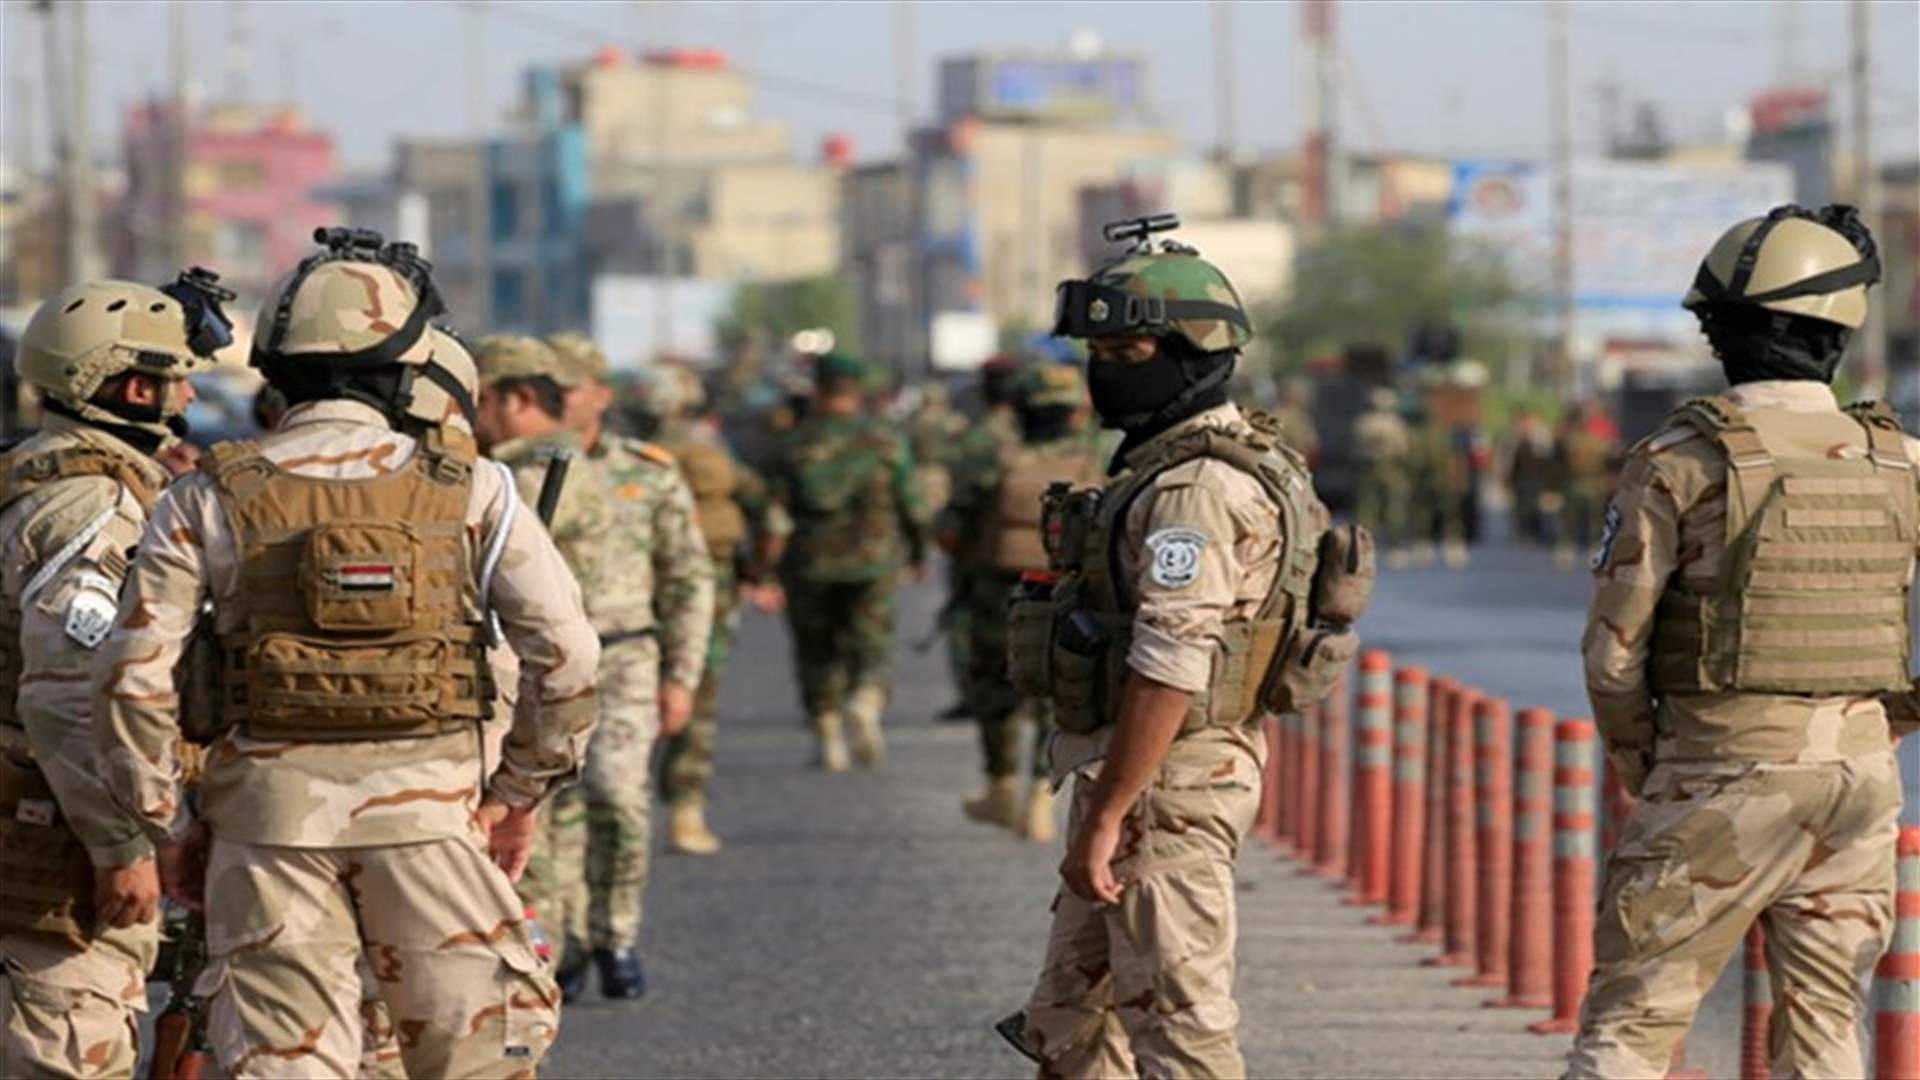 مقتل سبعة من أفراد قوات الأمن العراقية في هجوم نسب لتنظيم الدولة الاسلامية